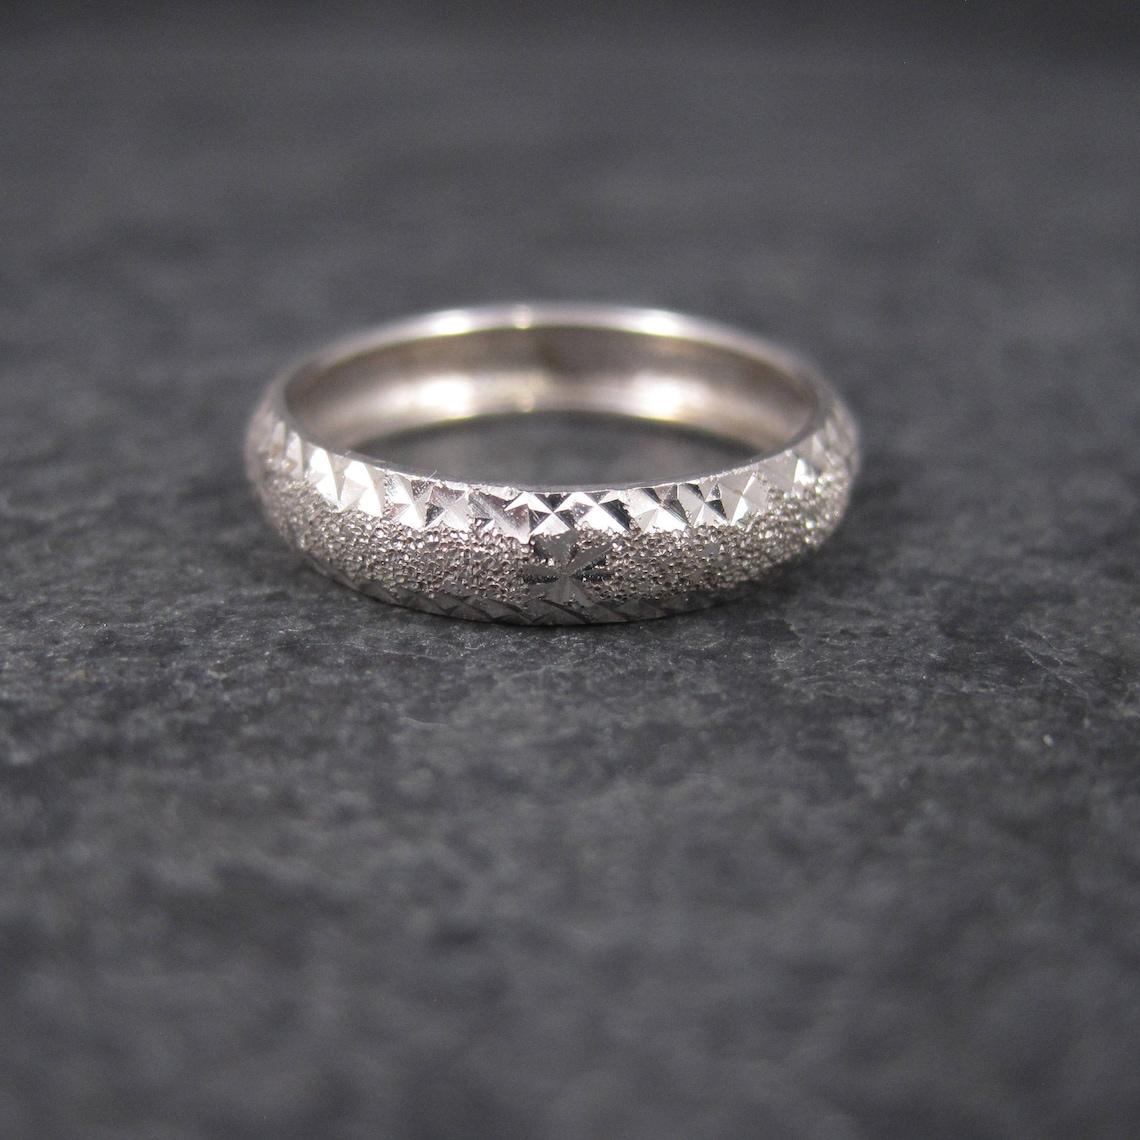 Ce magnifique anneau est en or blanc 14k.
Il présente un motif en forme d'étoile taillée en diamant.

Dimensions : 4 mm de large
Taille : 5

Marques : 14K, SLC

Condit : Excellent